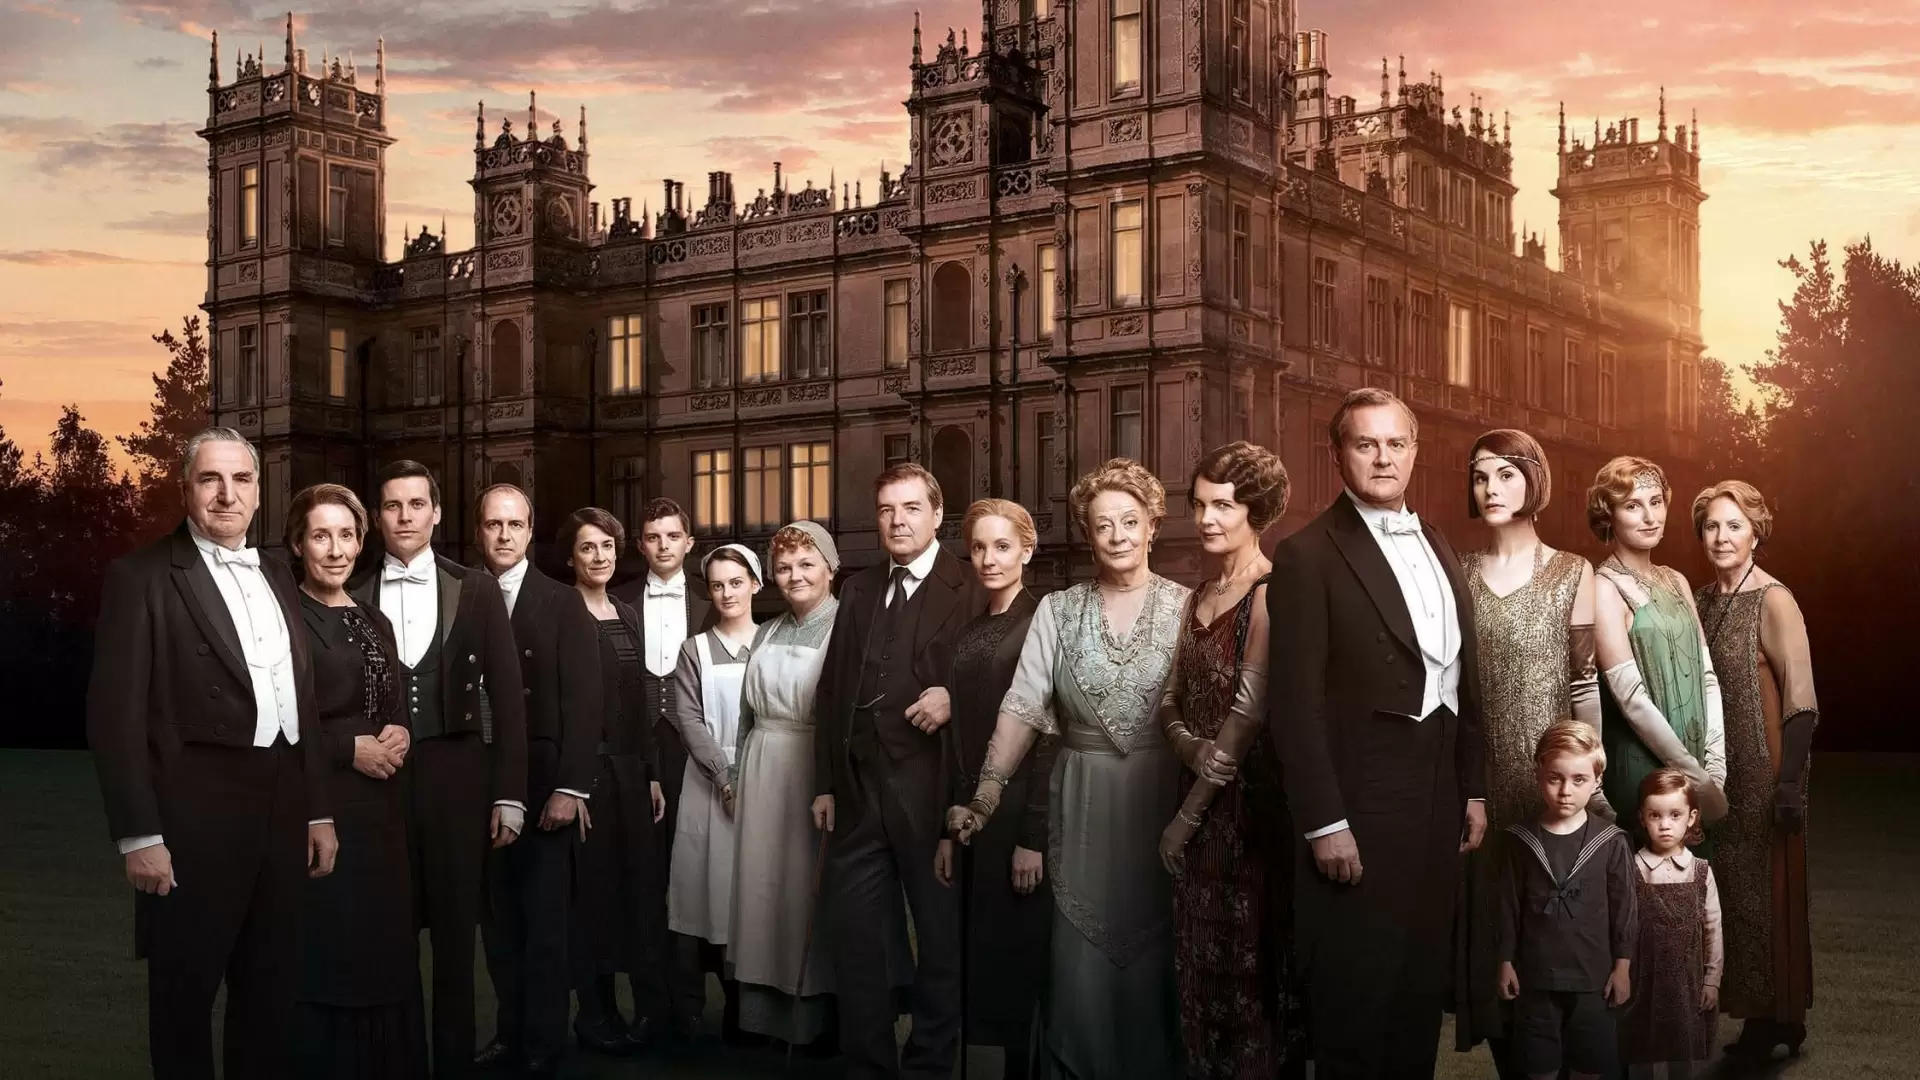 دانلود سریال Downton Abbey 2010 (دانتون اَبی) با زیرنویس فارسی و تماشای آنلاین